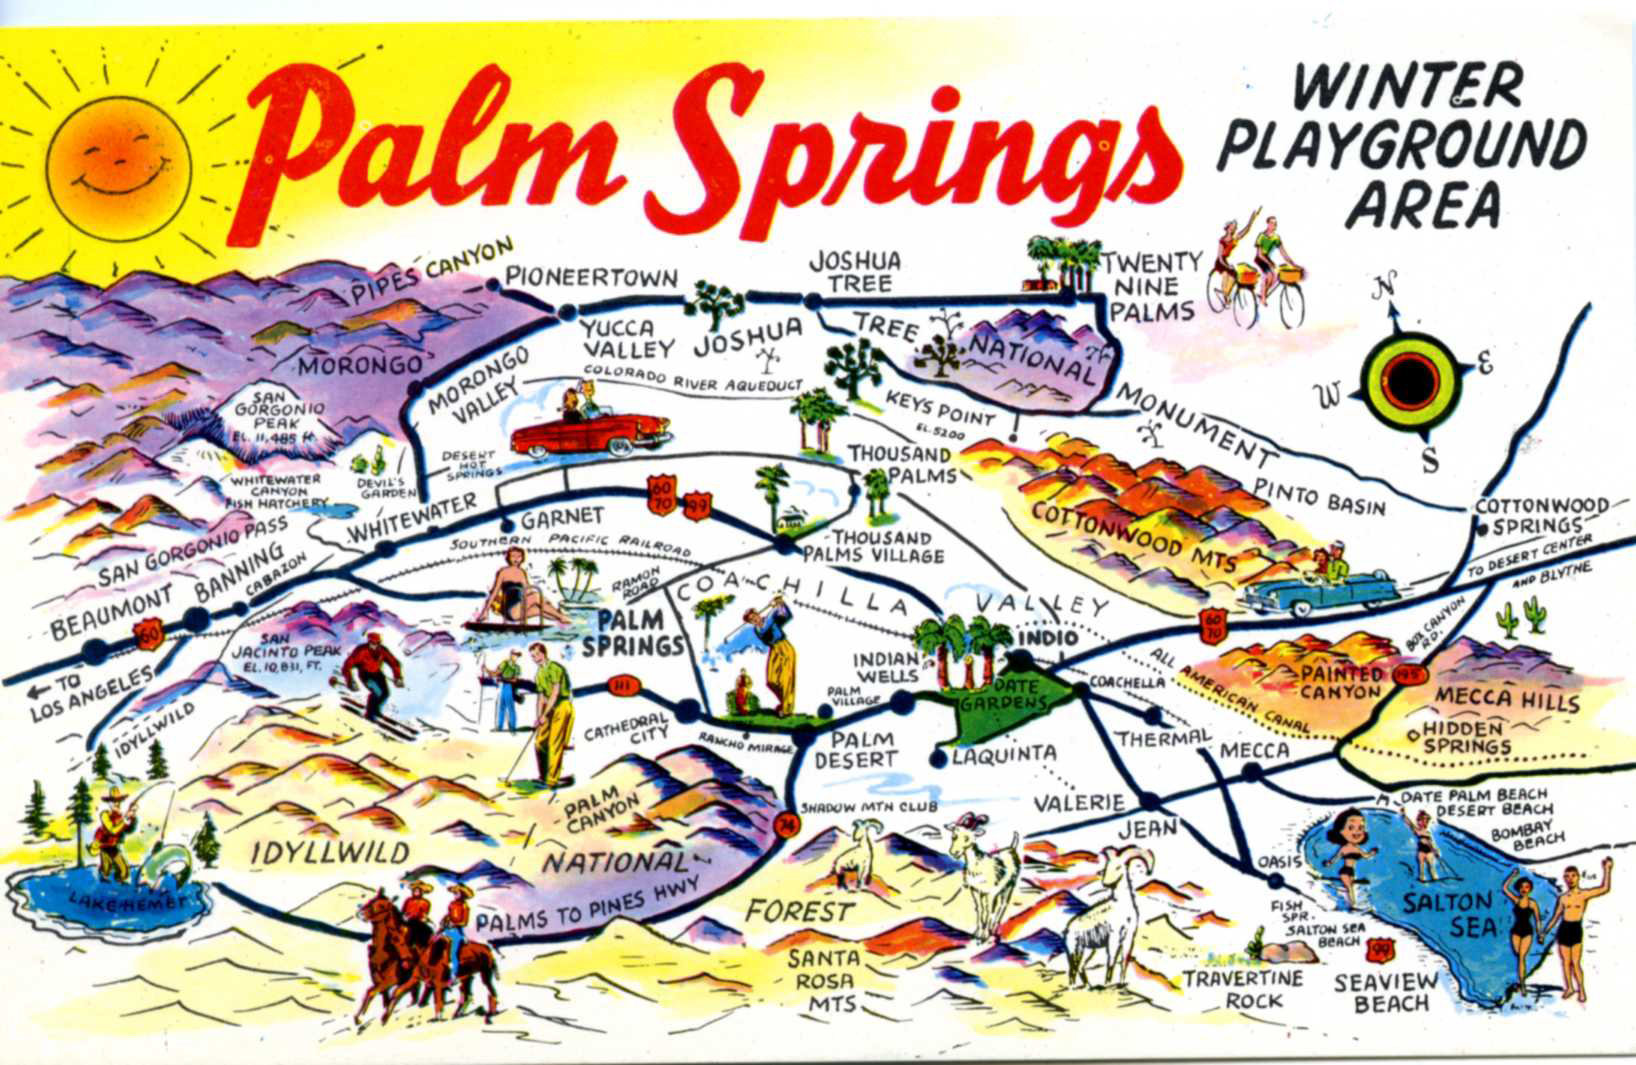 Palm Springs Winter Playground, Vintage Postcard